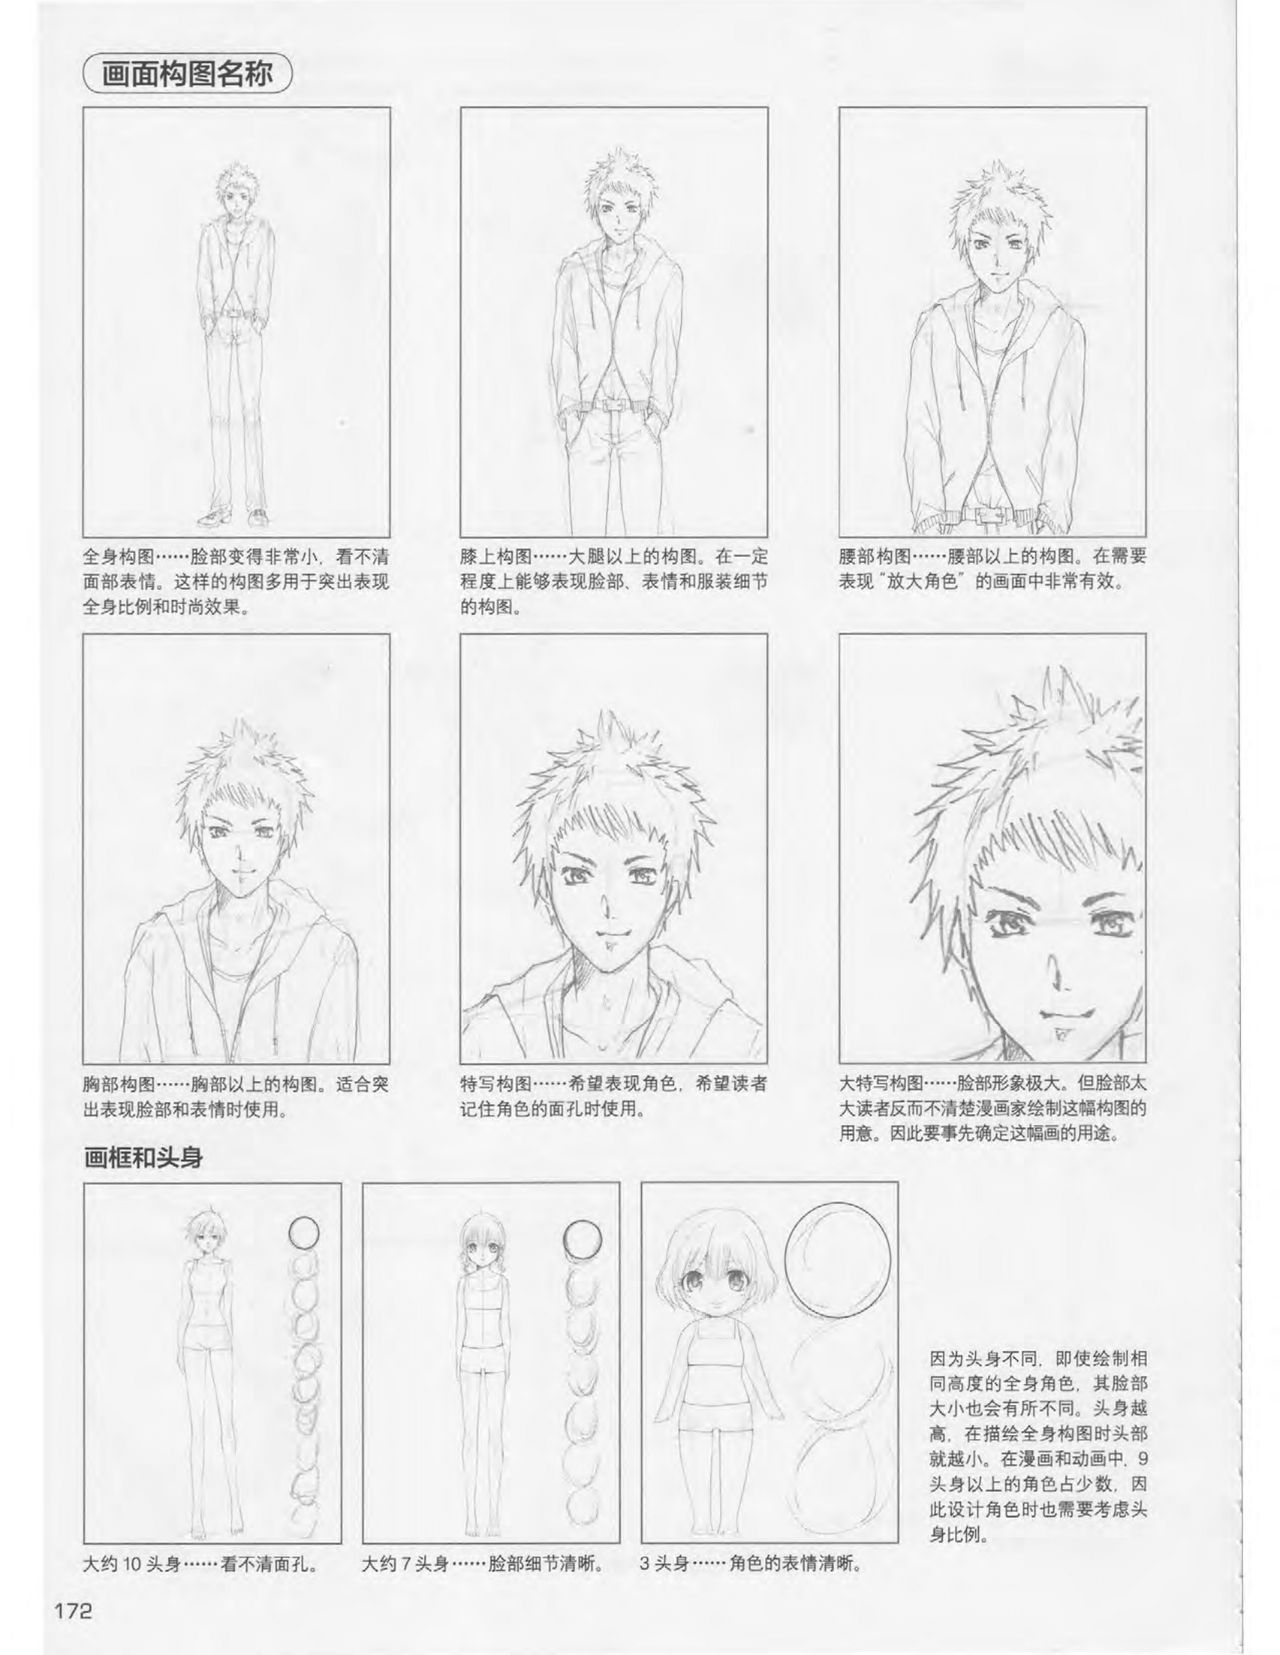 Japanese Manga Master Lecture 3: Lin Akira and Kakumaru Maru Talk About Glamorous Character Modeling 171